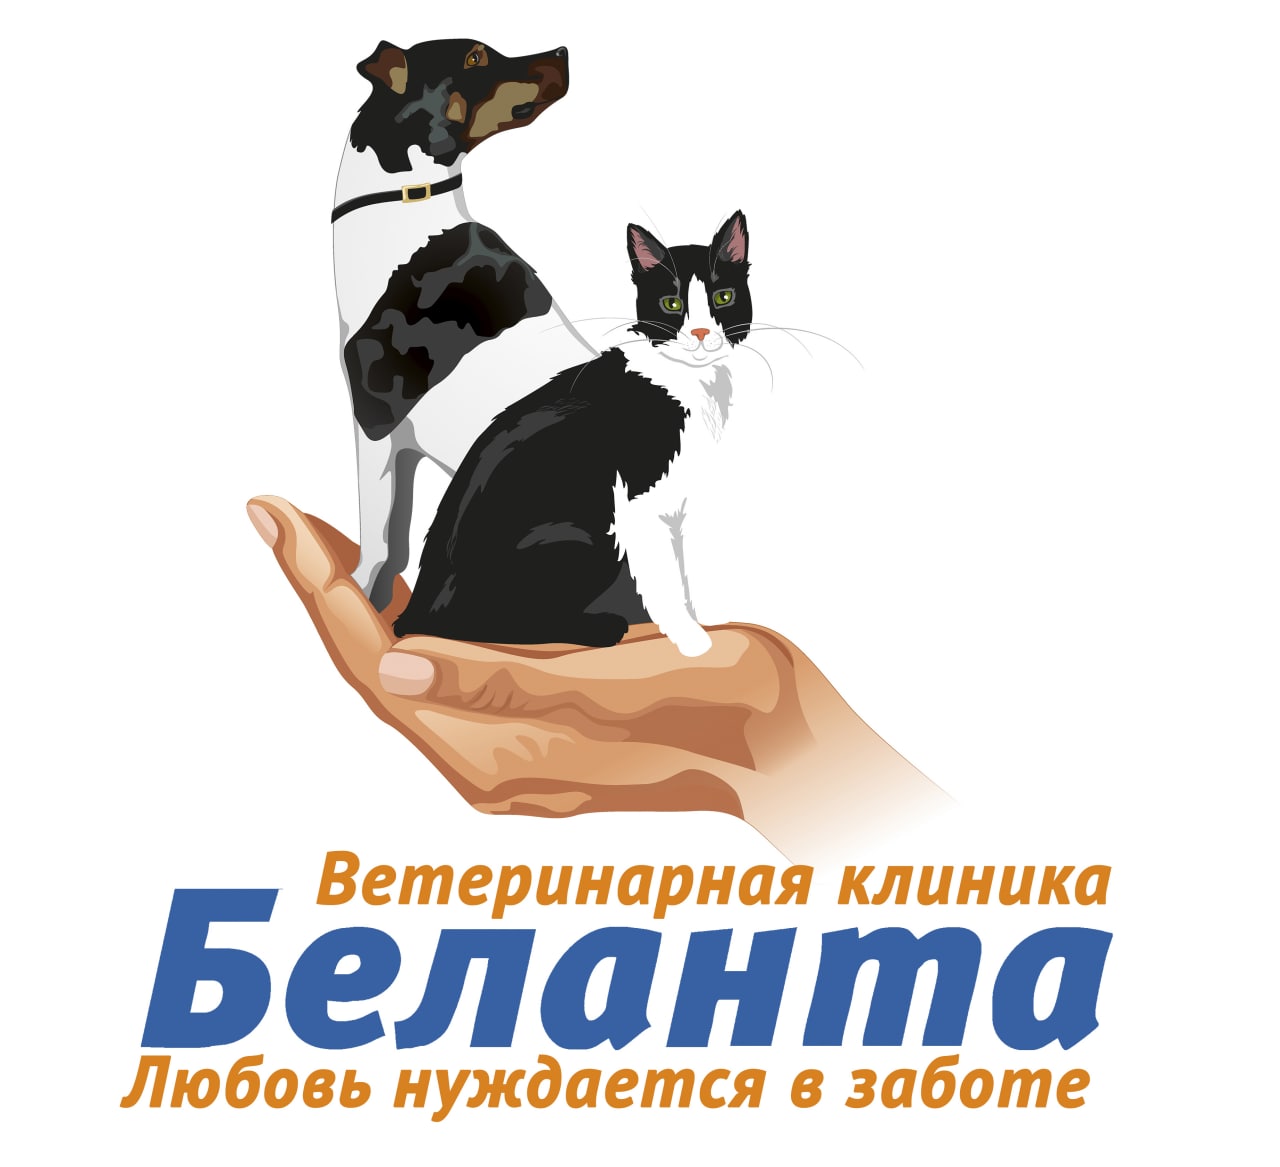 Ветеринарная клиника "Беланта" (Москва)